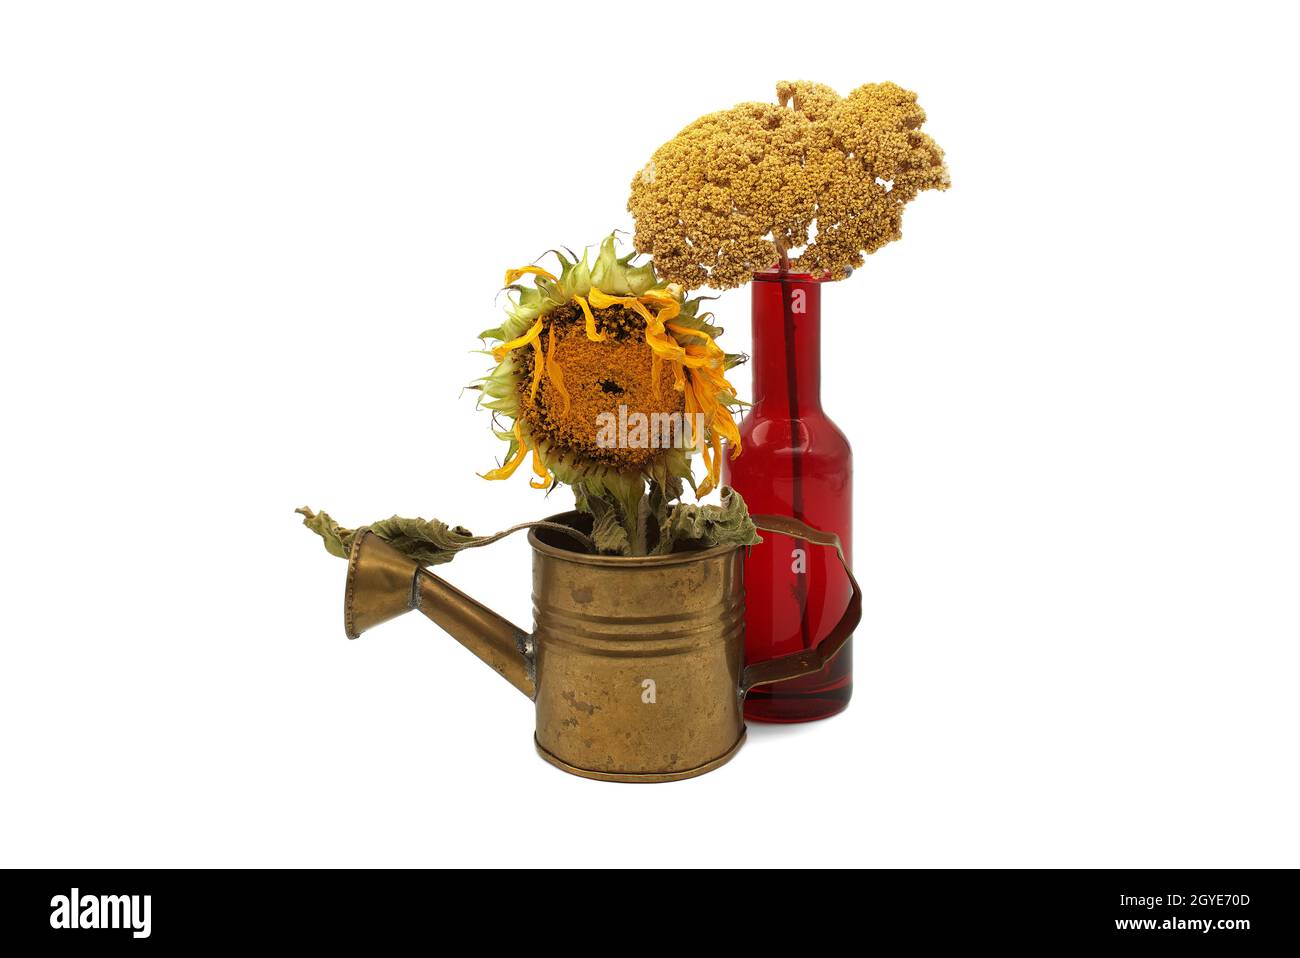 Spätsommerstill-Leben mit welkender Sonnenblume, die die Samenbildung in einer rustikalen alten Gießkannenmit Wildblume in einem bunten roten Flaschengehinn zeigt Stockfoto